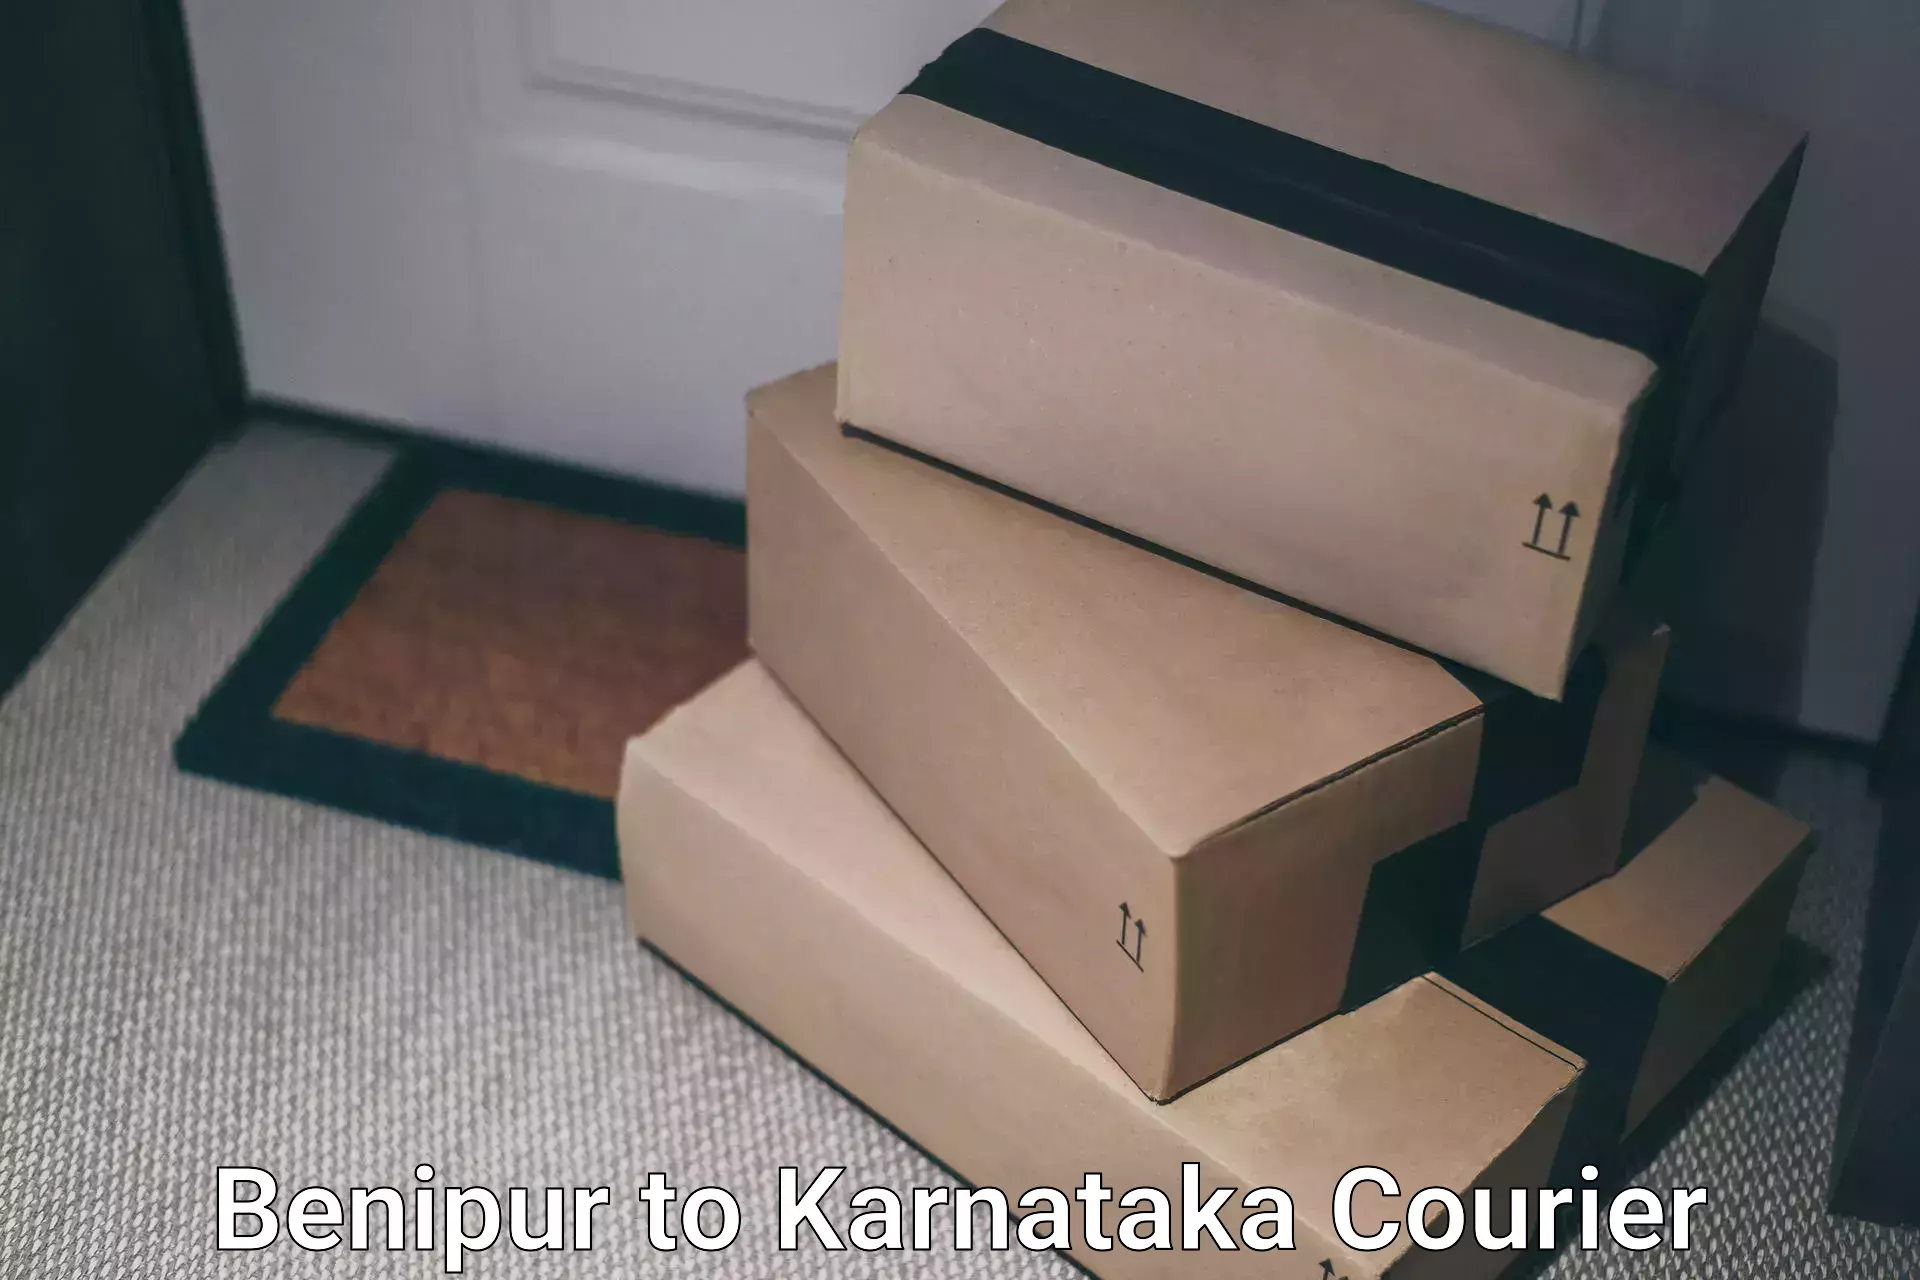 Large package courier Benipur to Karnataka